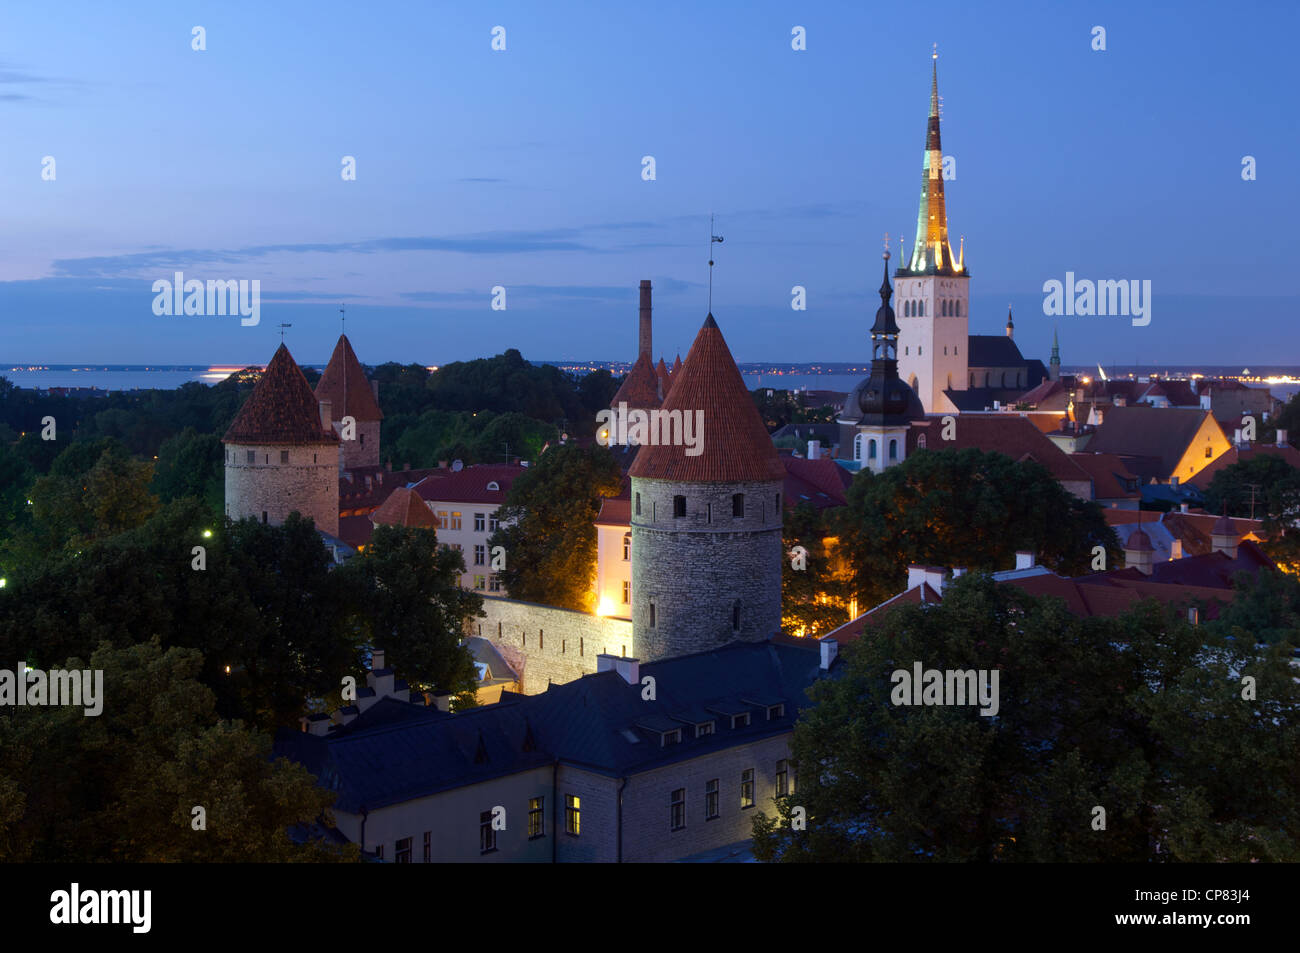 Tallinn, Estonia, Baltic States Stock Photo